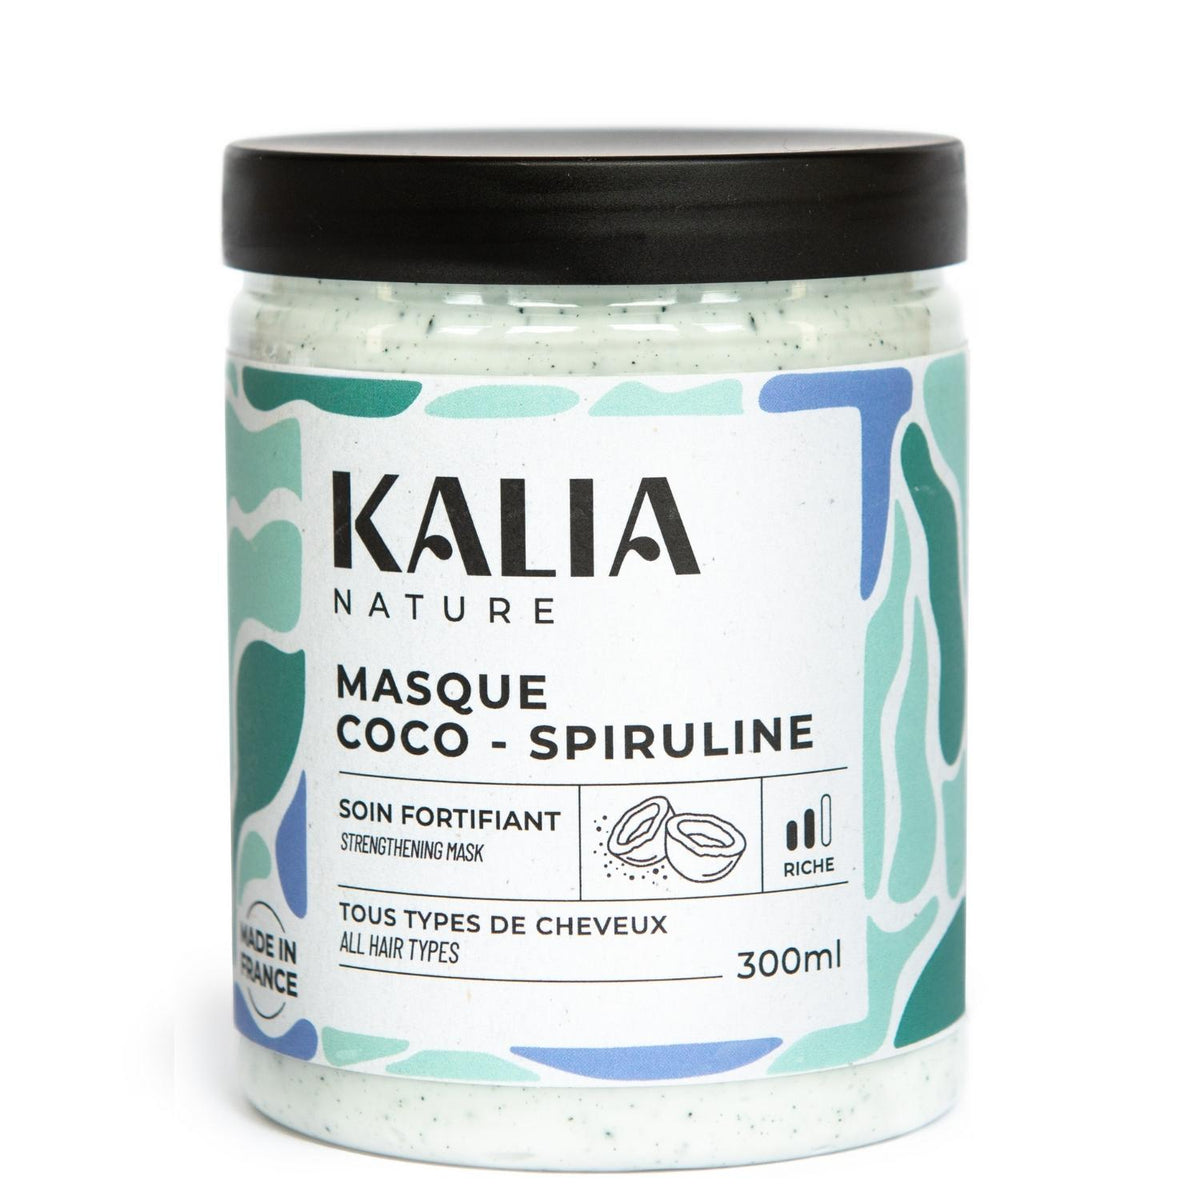 Composé de Spiruline, une algue marine fortifiante et de beurre de coco, le Masque Coco Spiruline de Kalia Nature répare et nourrit parfaitement les cheveux bouclés.